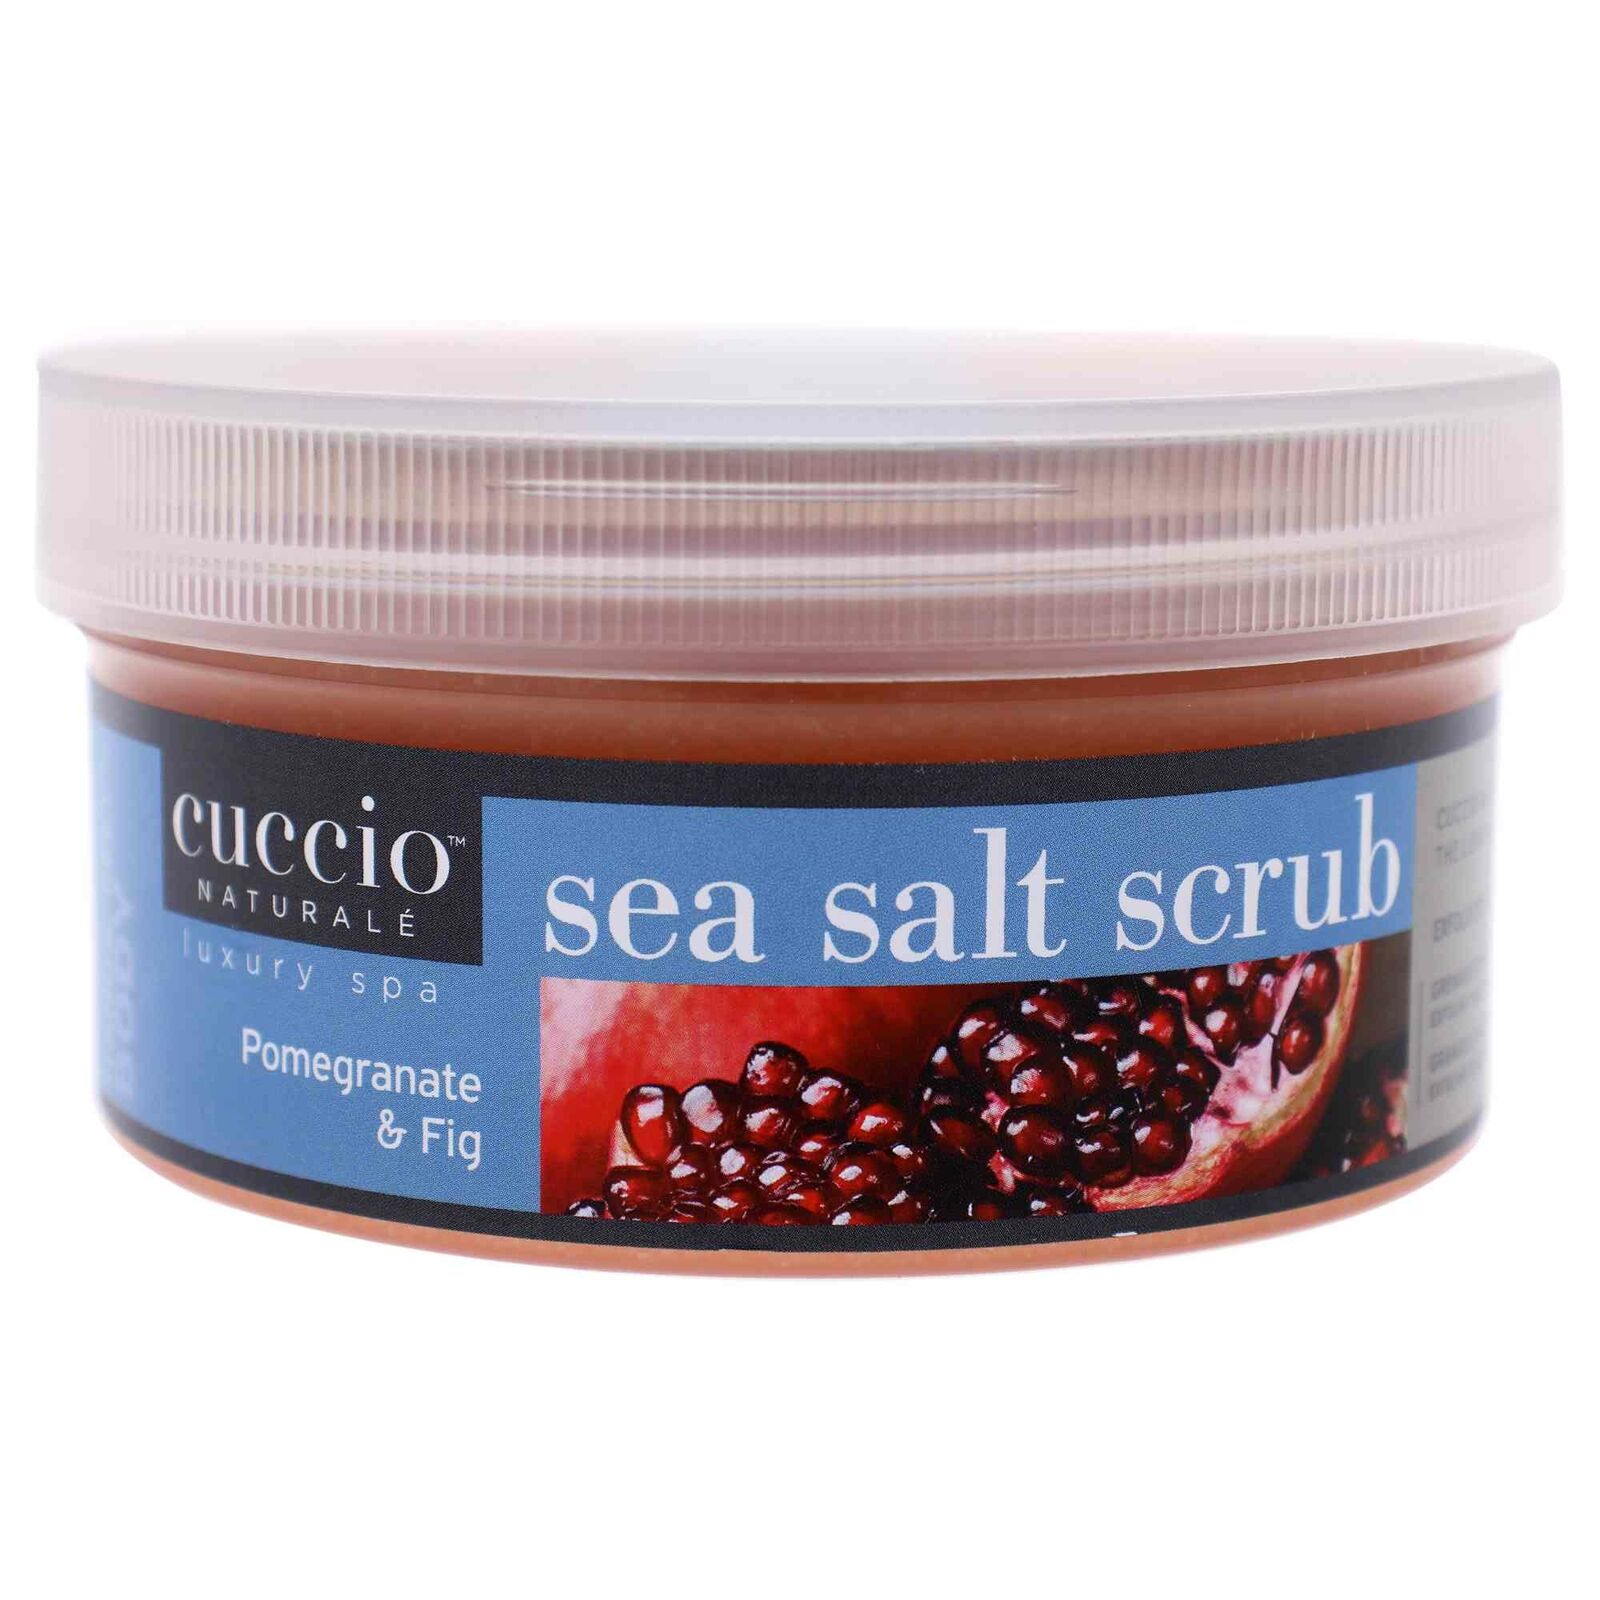 Sea Salt Scrub - Pomegranate and Fig by Cuccio for Women - 19.5 oz Scrub